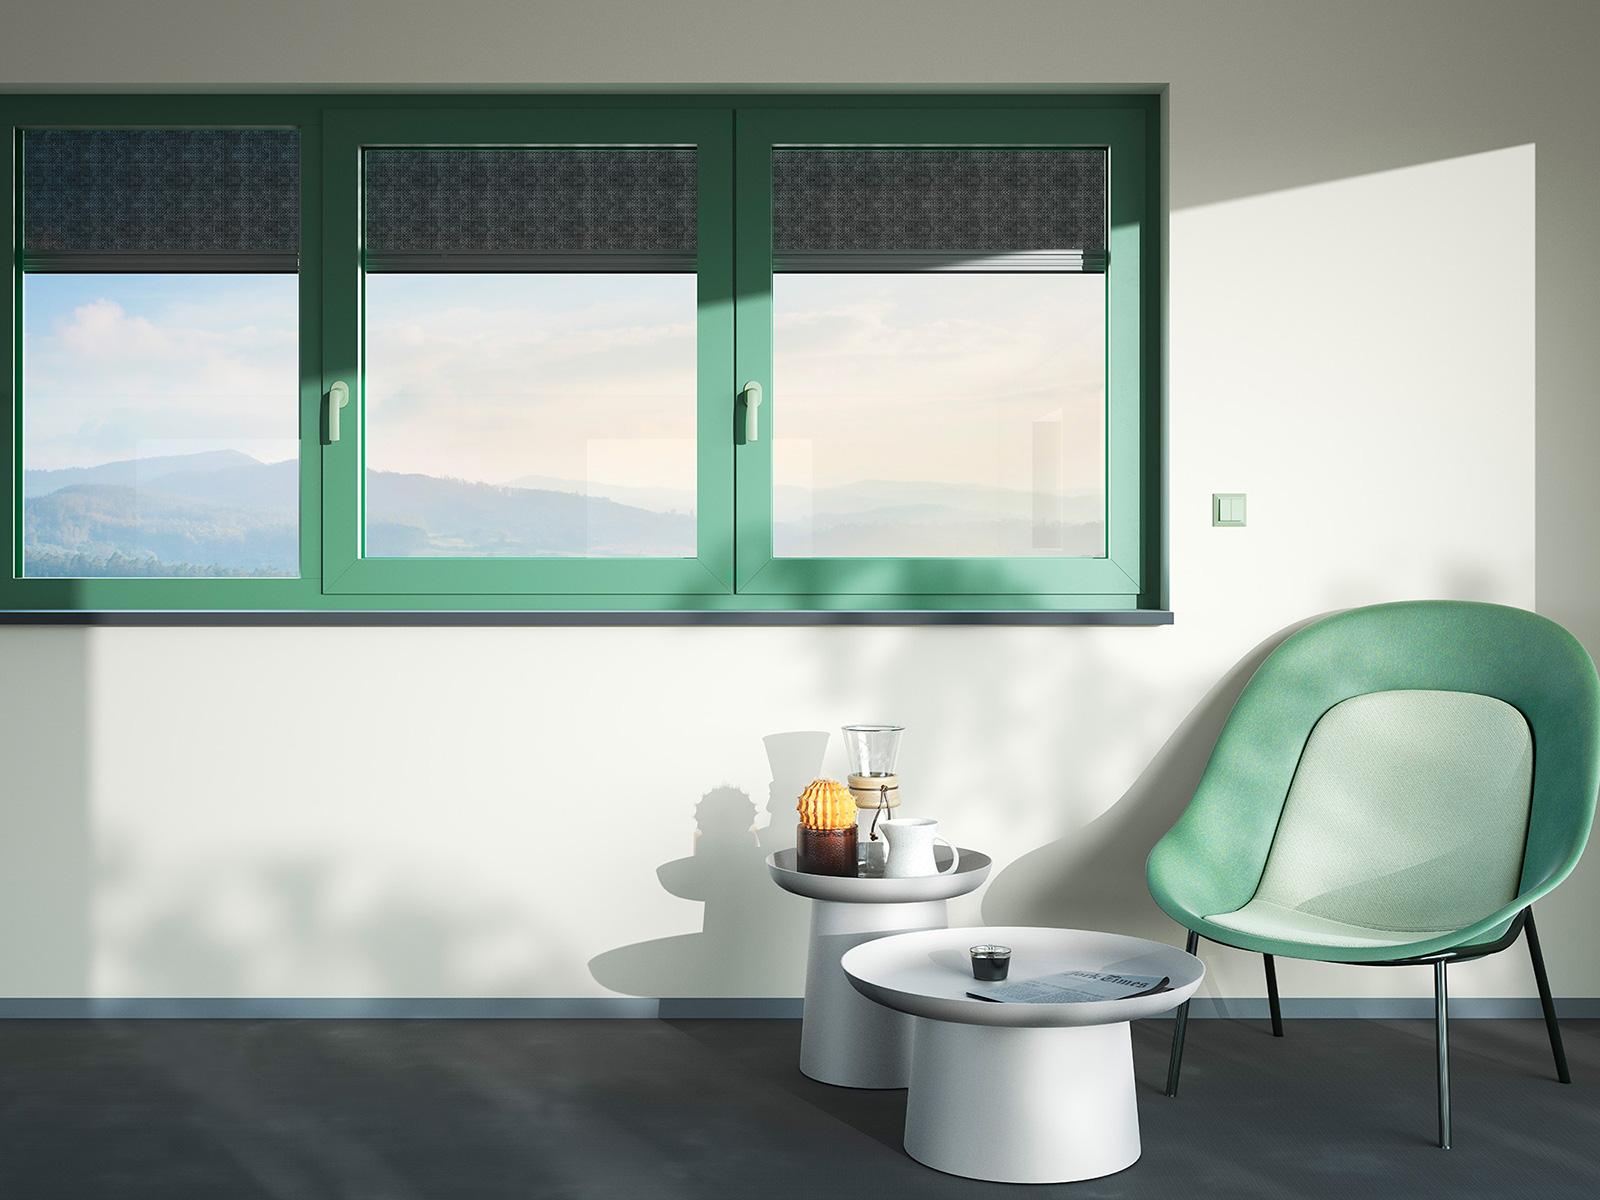 Exkluzivní barevné odstíny Les Couleurs® Le Corbusier jsou dostupné pro všechna systémová řešení heroal a vytváří barevné akcenty v soukromé výstavbě a ve stavbě obytných či komerčních objektů. Foto: heroal